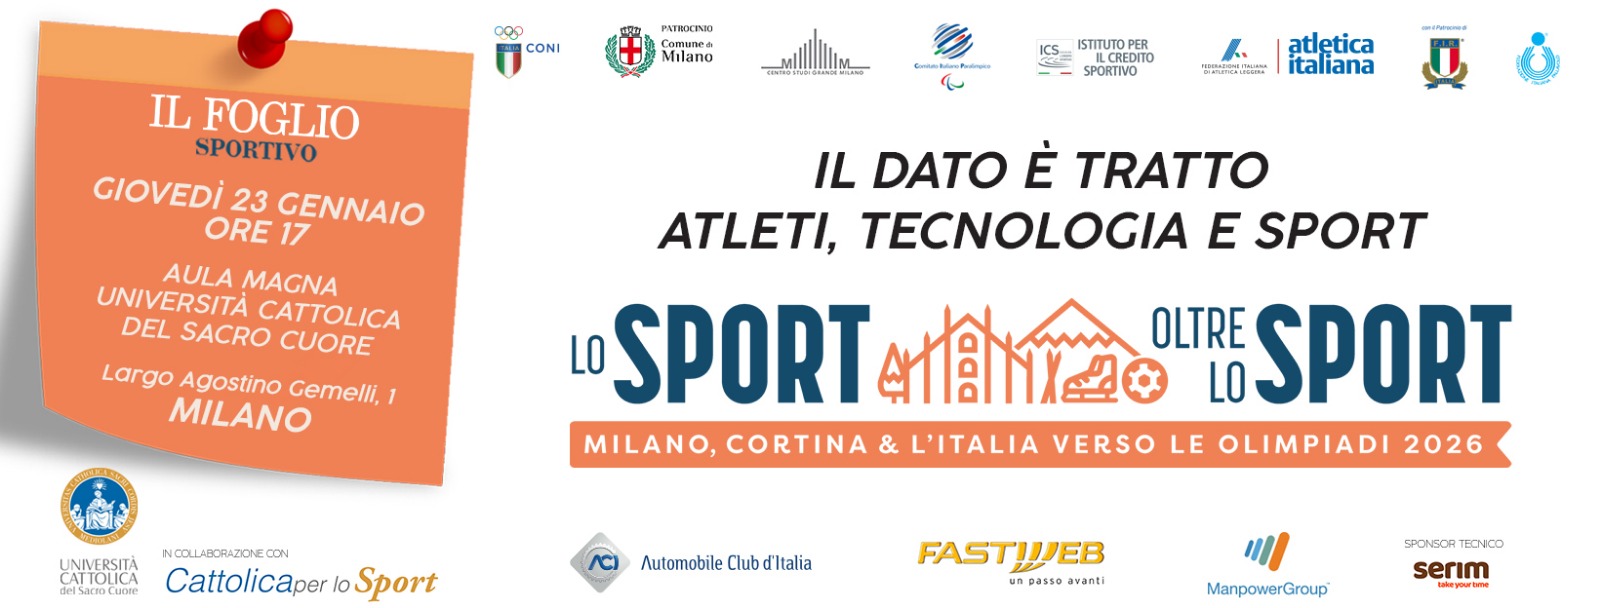 Progetto “Lo Sport oltre lo sport”, con focus “Sport e tecnologia”.